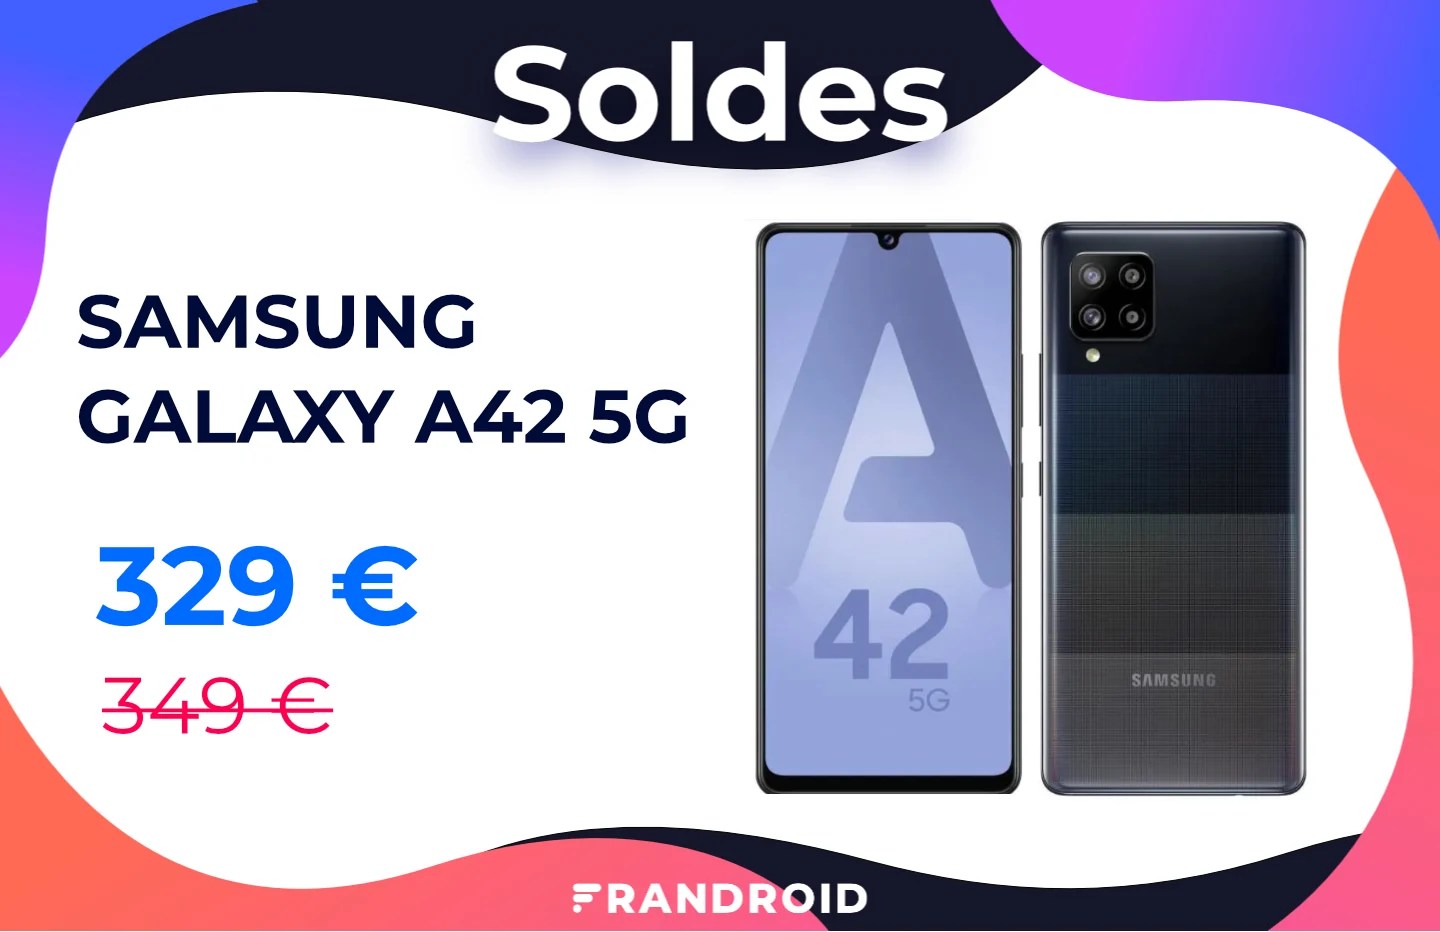 Le récent Samsung Galaxy A42 5G est déjà moins cher grâce à ce code promo spécial soldes